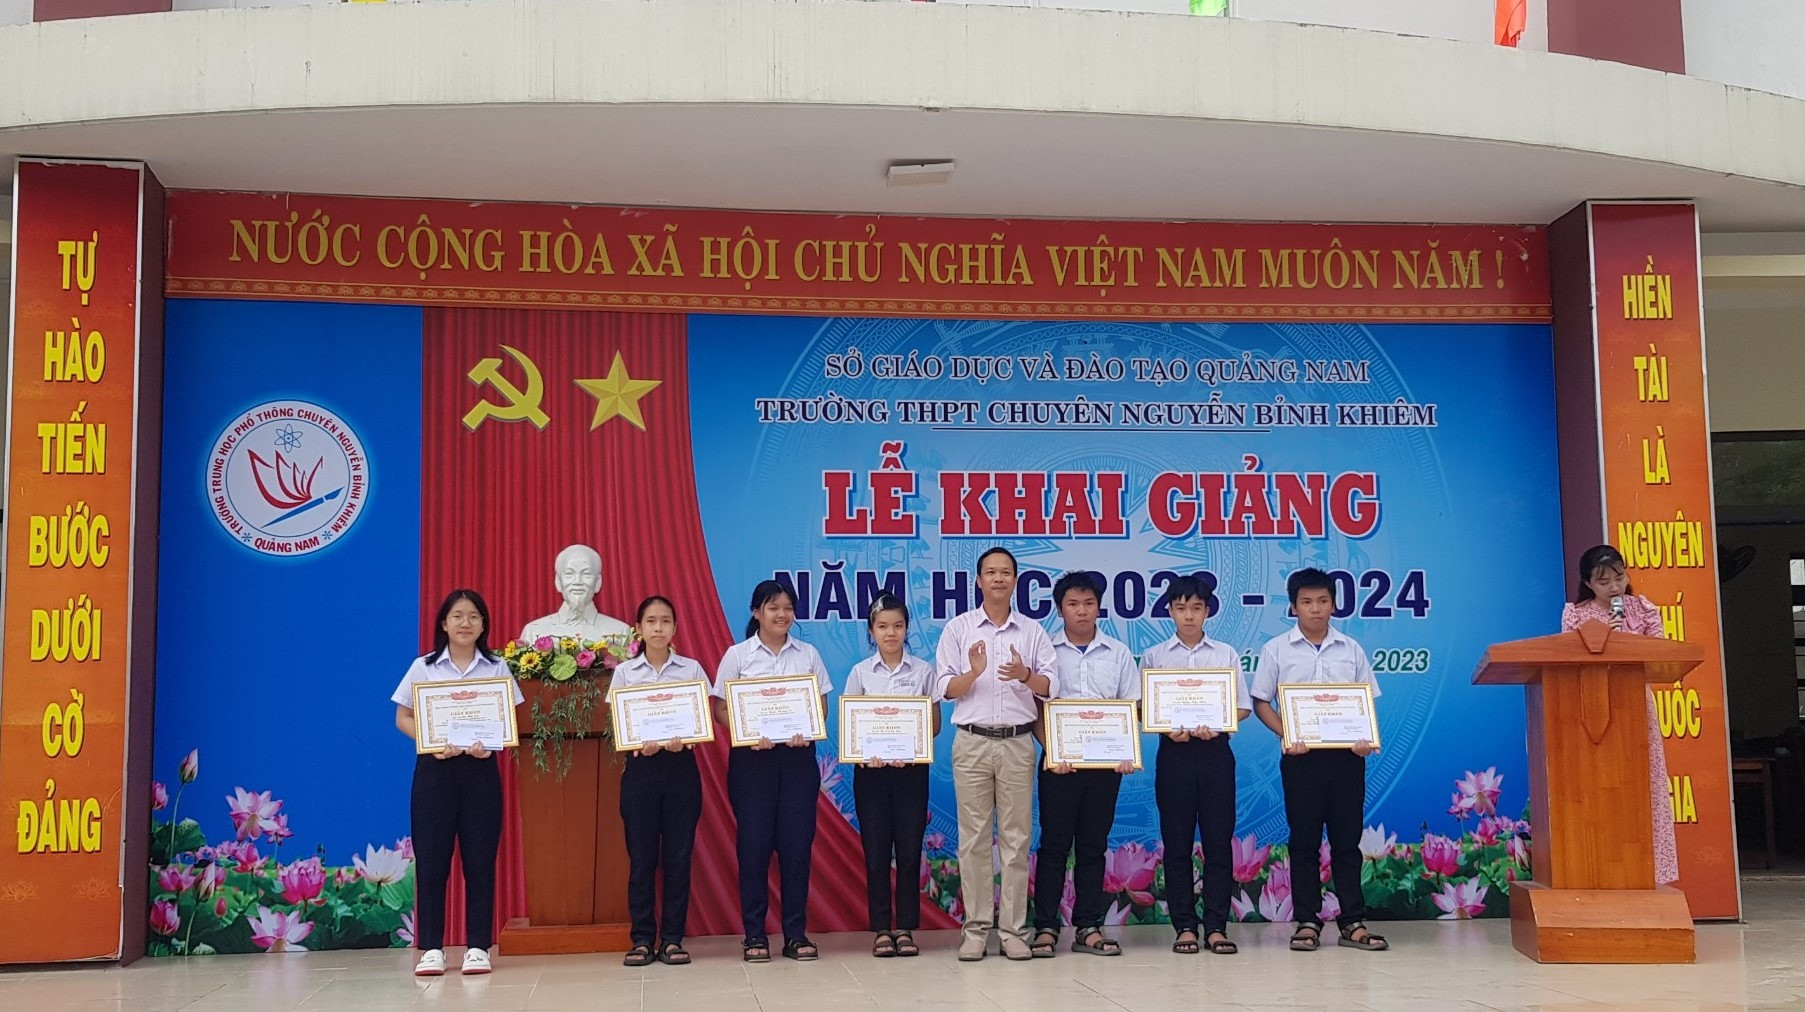 Trường THPT chuyên Nguyễn Bỉnh Khiêm trao học bổng trước thềm năm học mới. Ảnh: NTCC